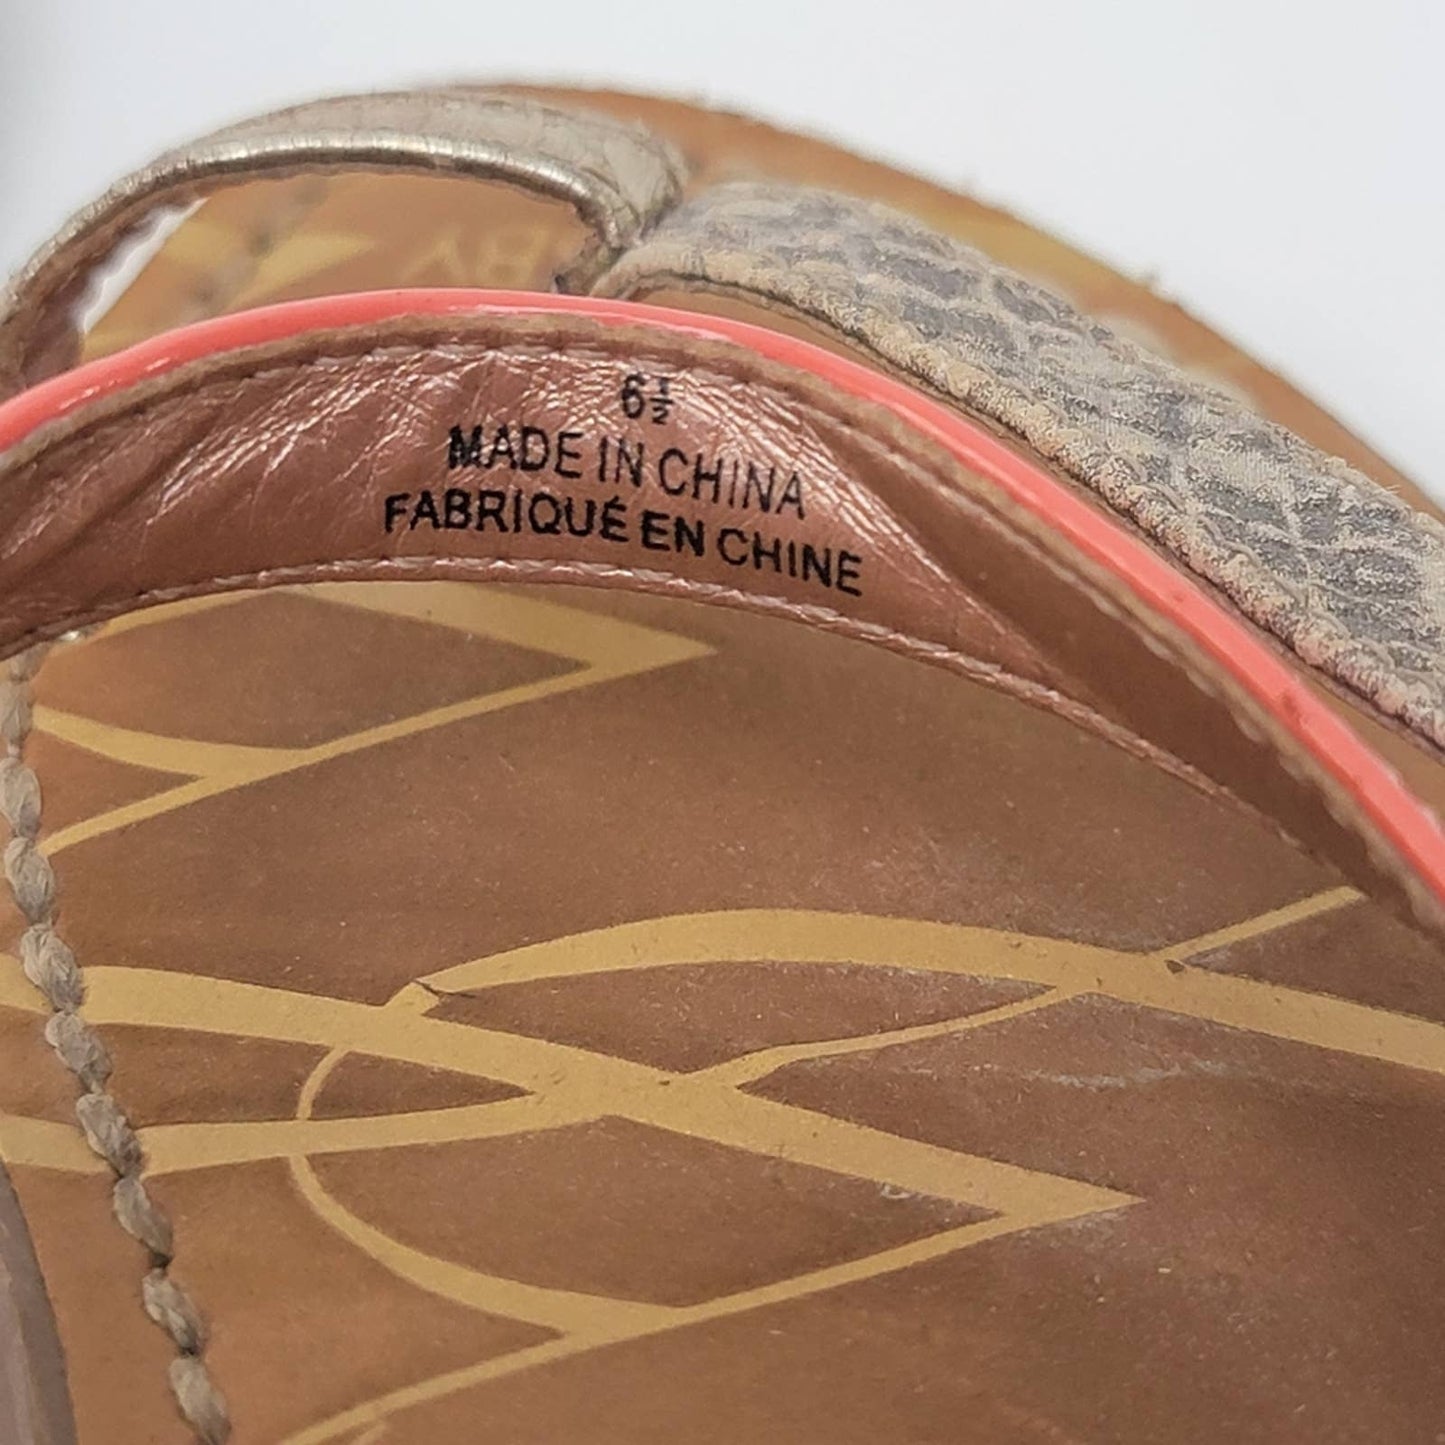 Sam & Libby Strappy Snakeskin Leather Summer Flip Flop Sandals - 6.5